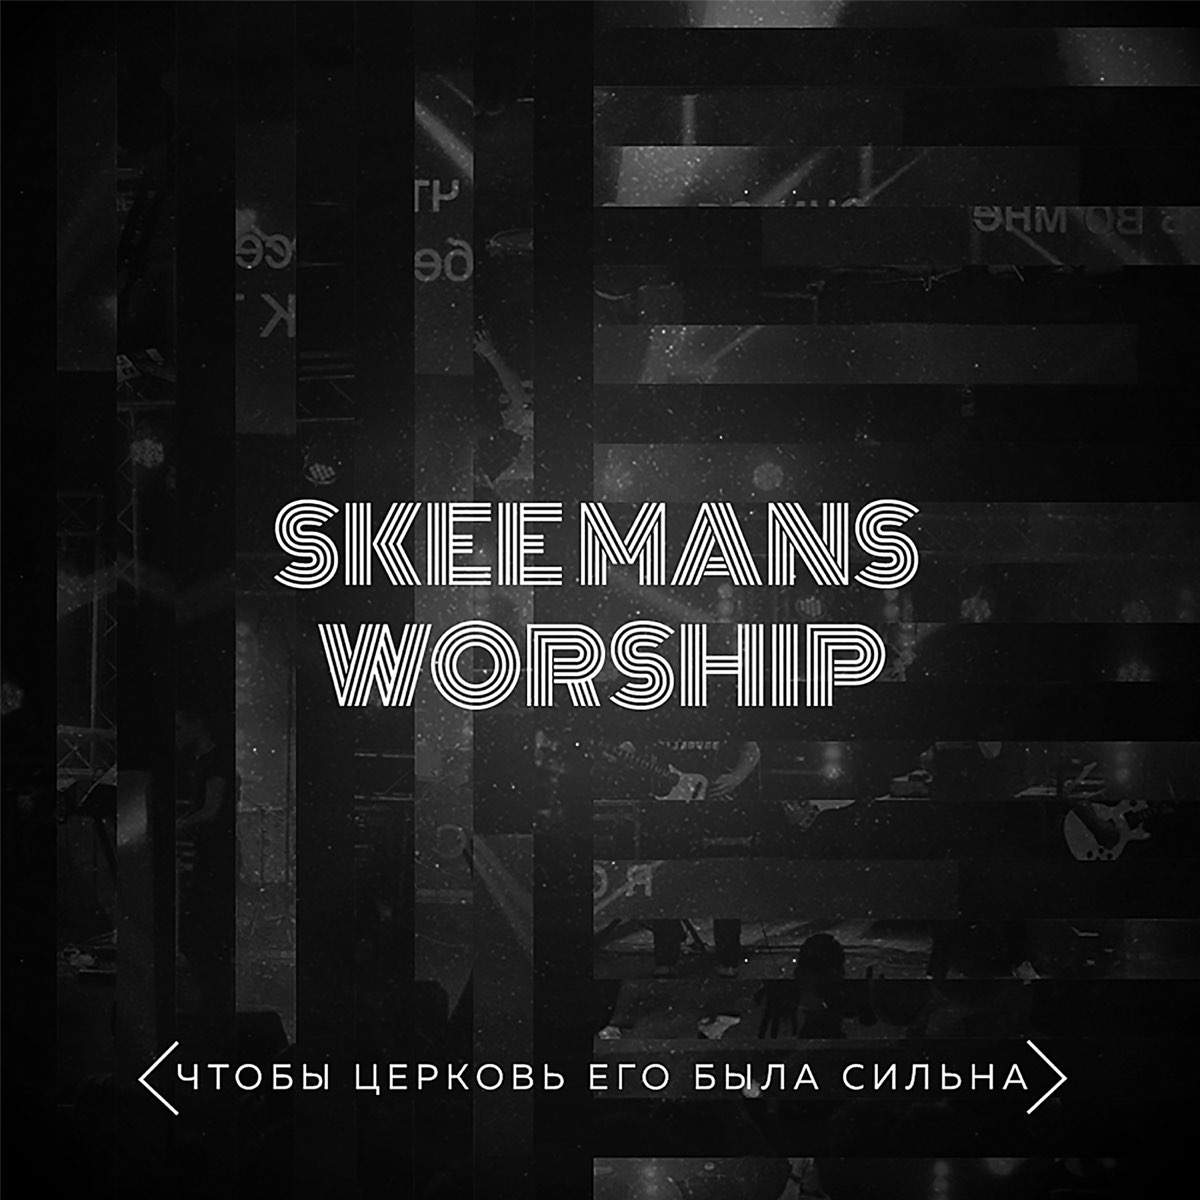 Skeemans Worship - Чтобы церковь Его была сильна (2017) лушать скачать альбом прославления